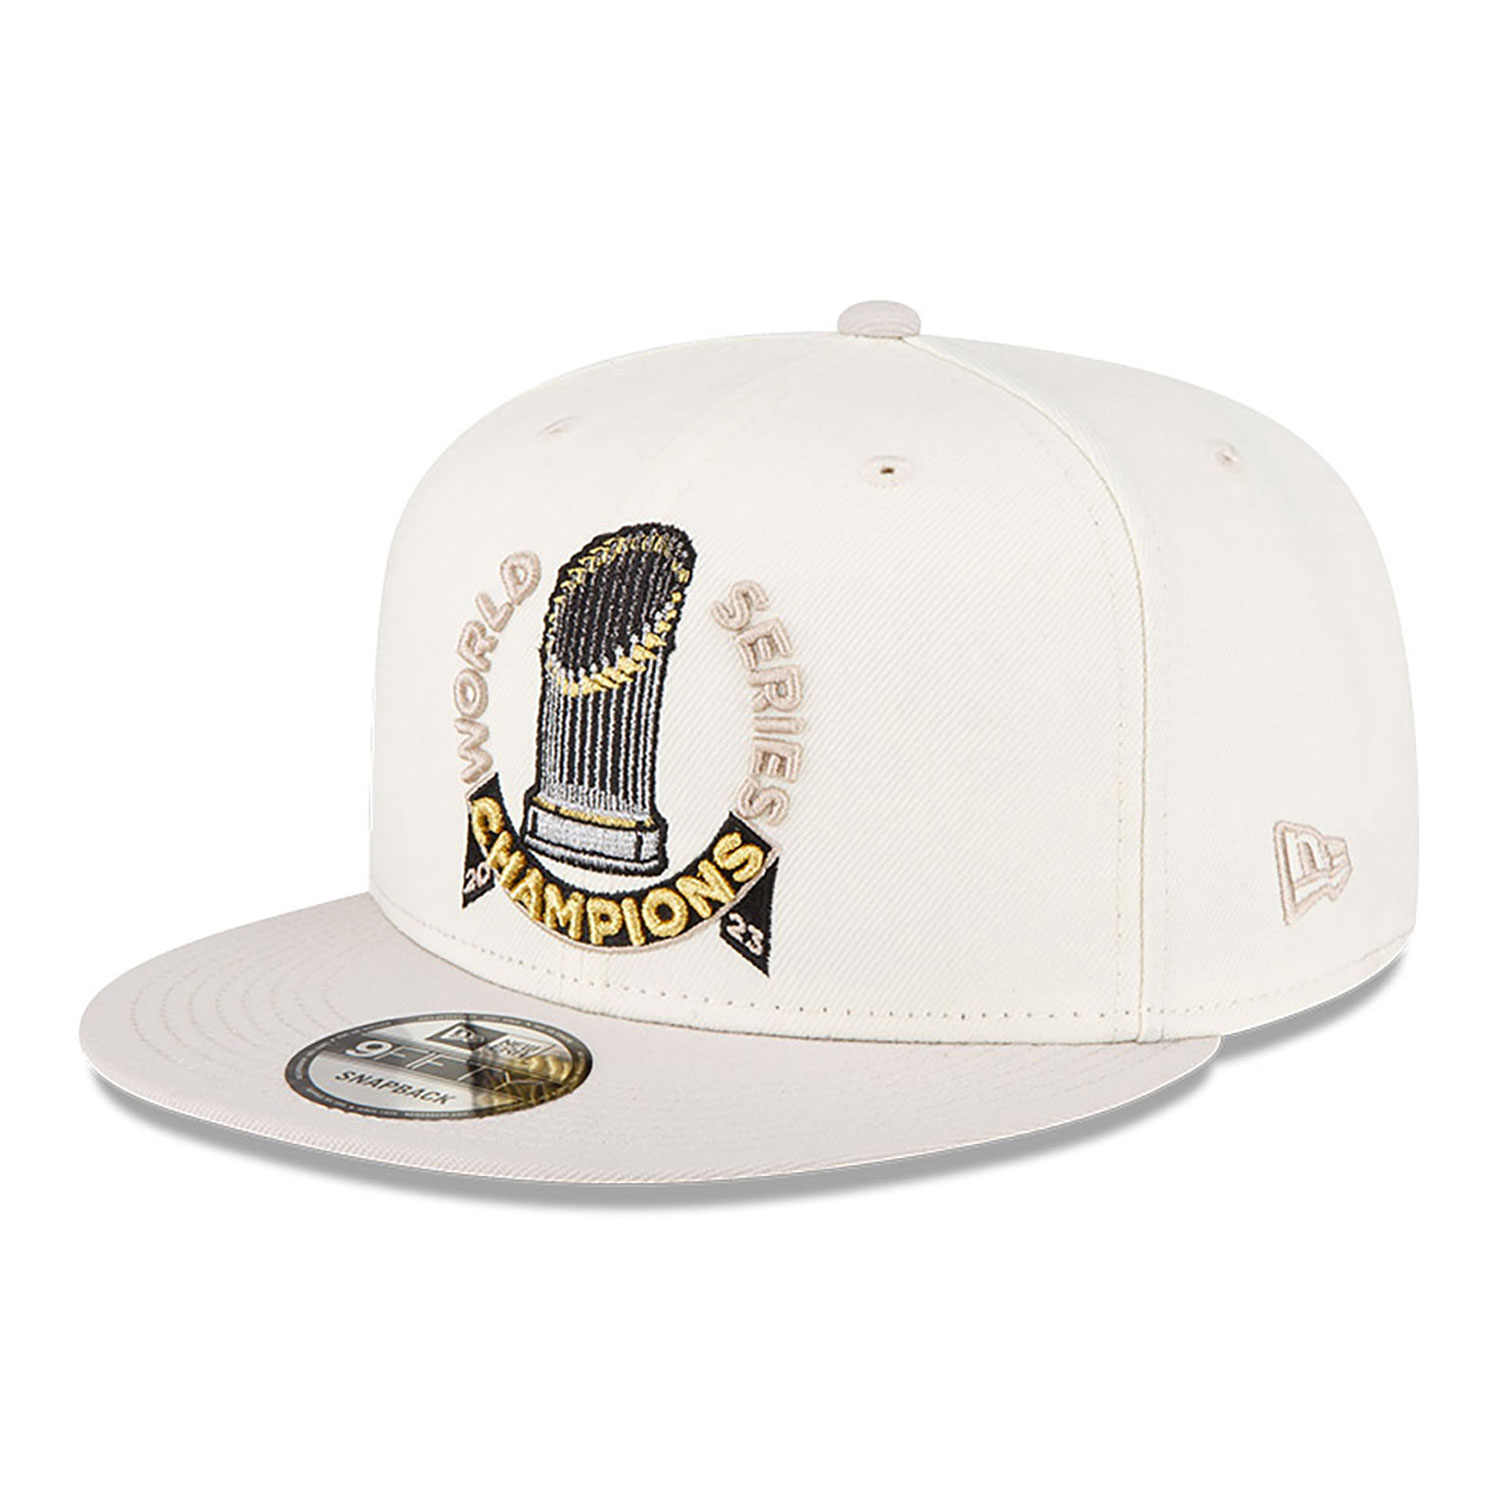 Texas Rangers MLB Parade White 9FIFTY Snapback Cap